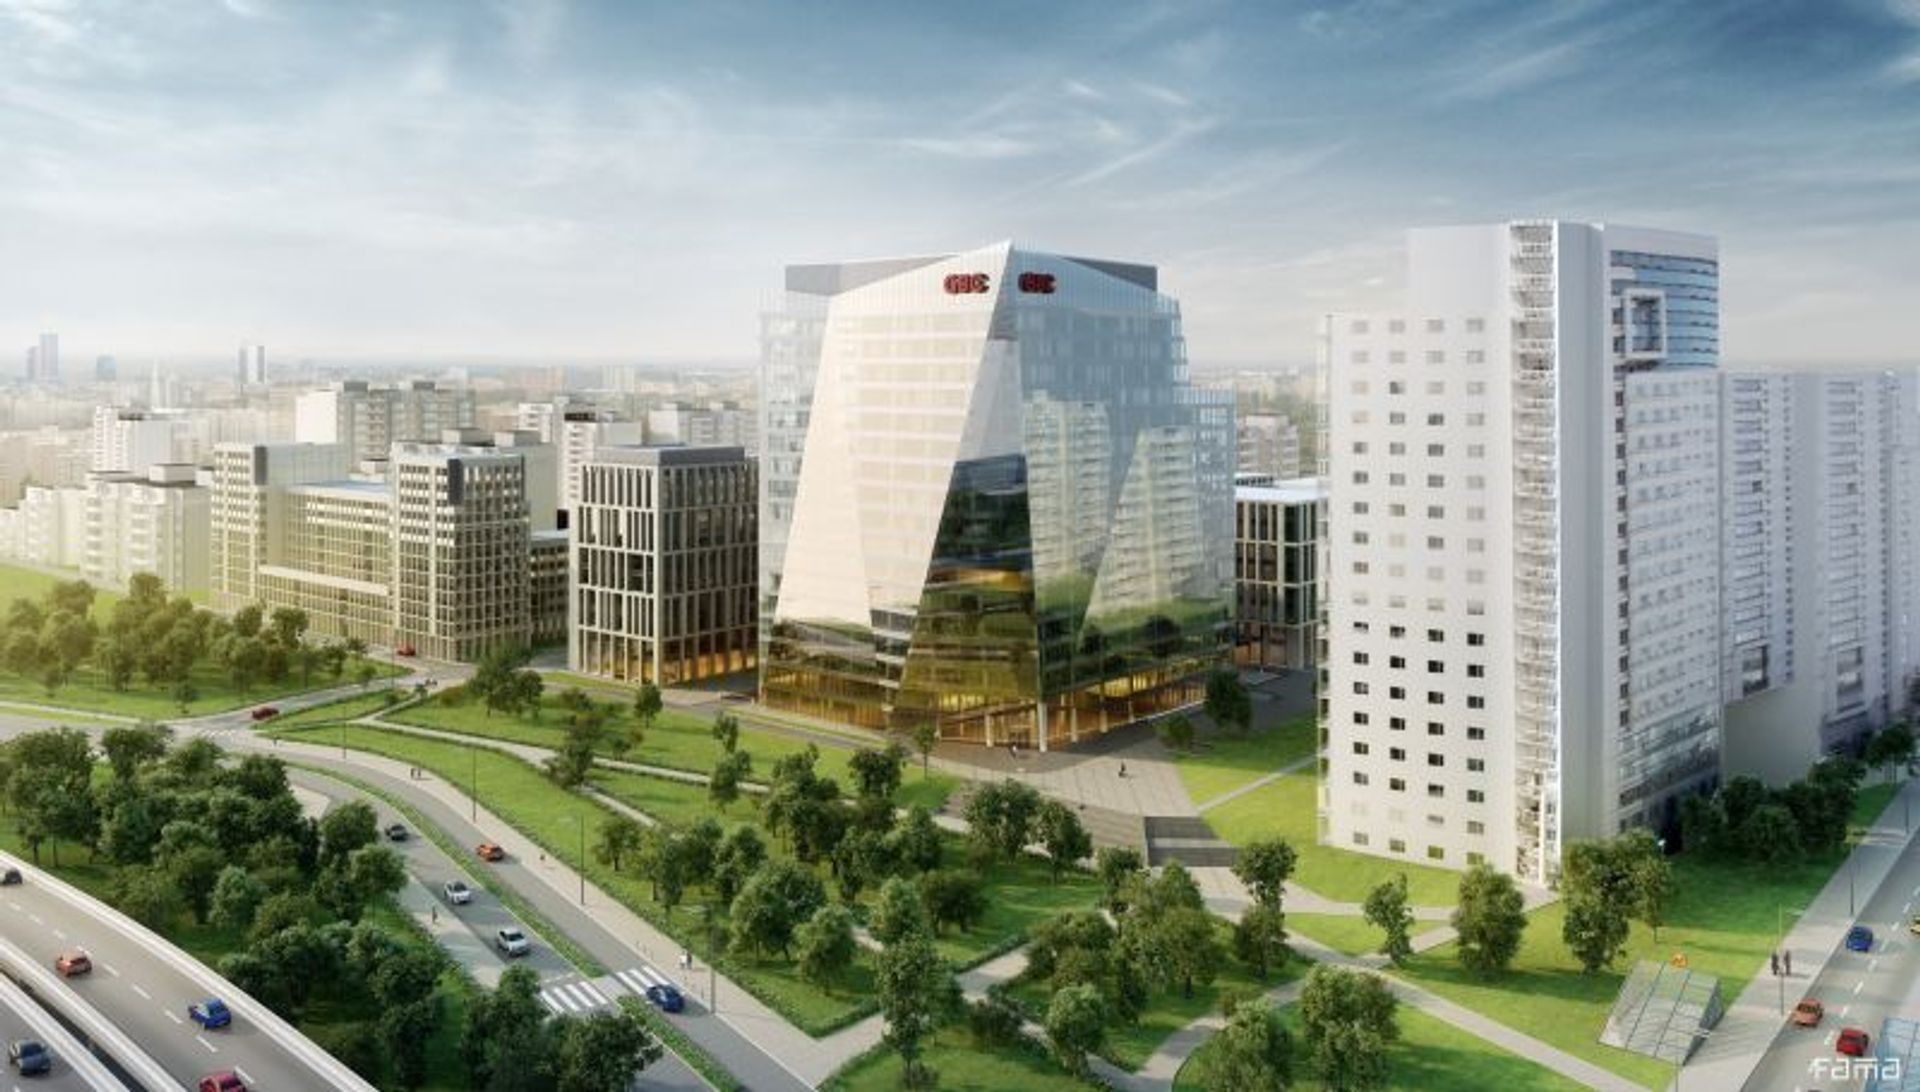  Gdański Business Center zyskał nowego najemcę